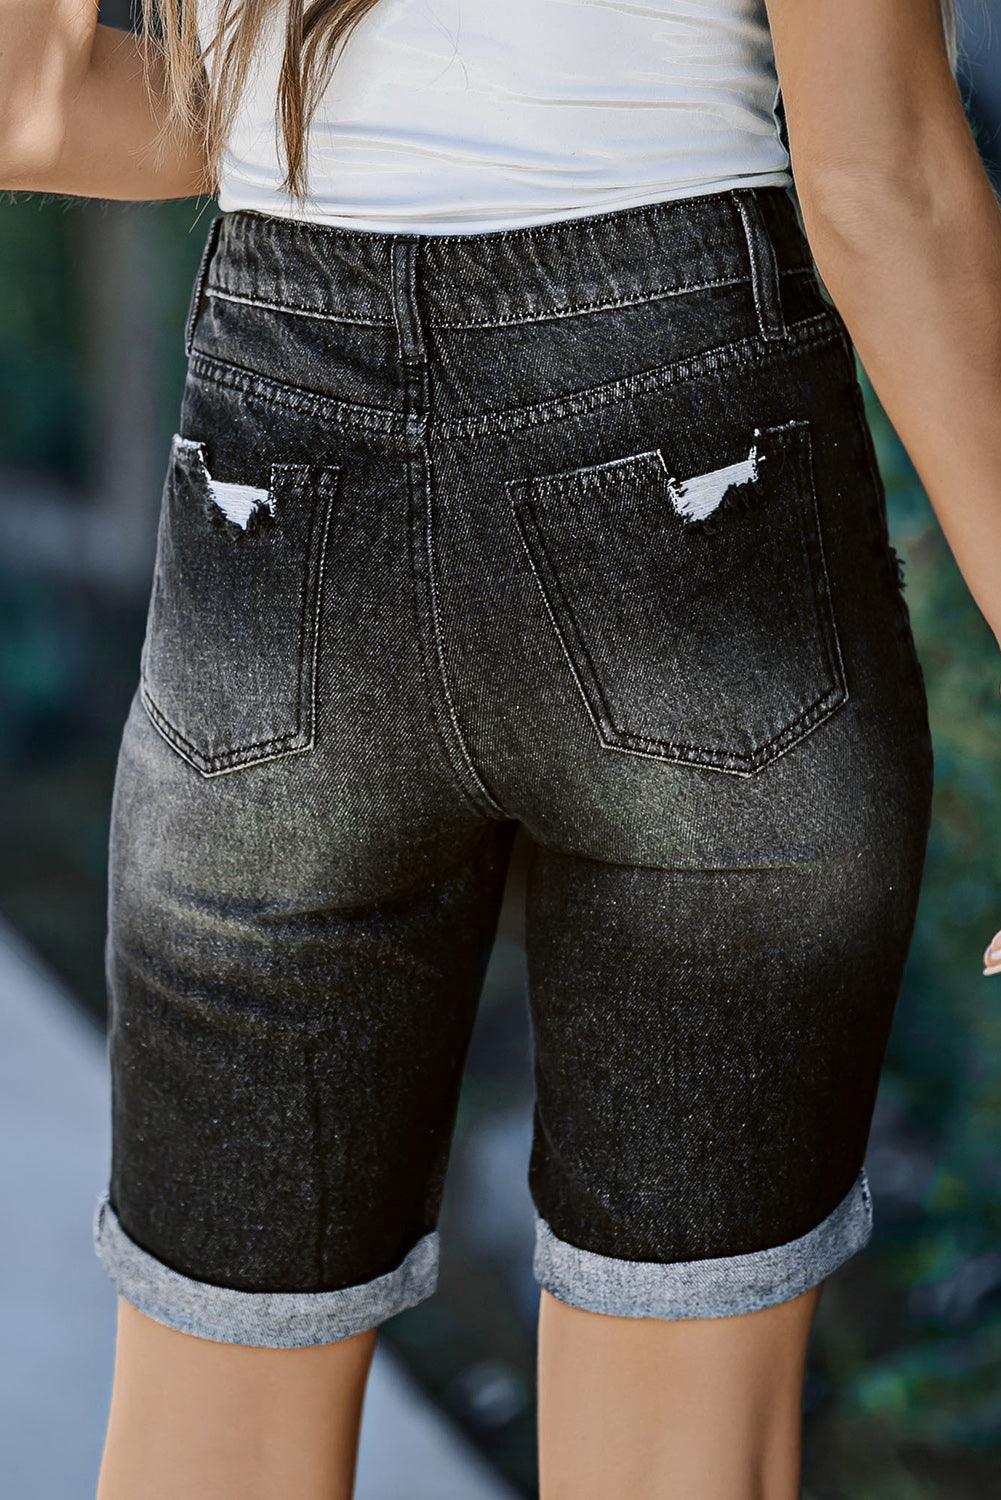 Roll-up Distressed Bermuda Denim Shorts - L & M Kee, LLC